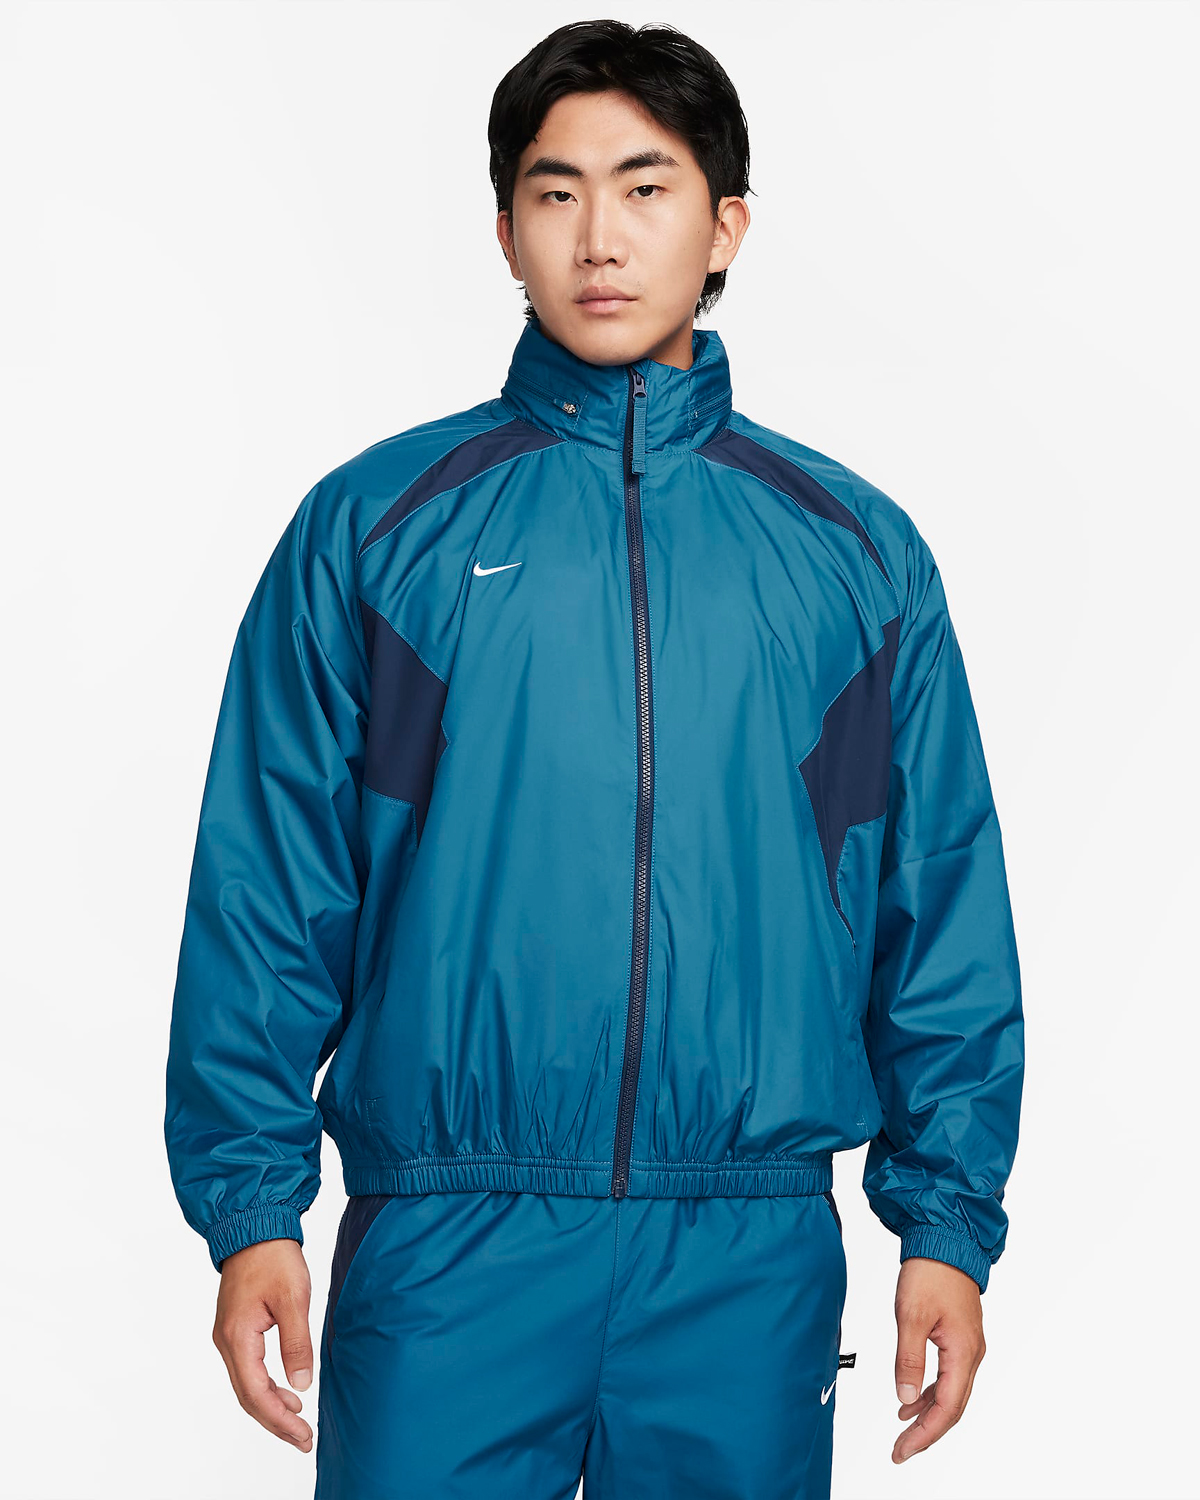 Nike-Repel-Lightweight-Soccer-Jacket-Industrial-Blue-Midnight-Navy-1